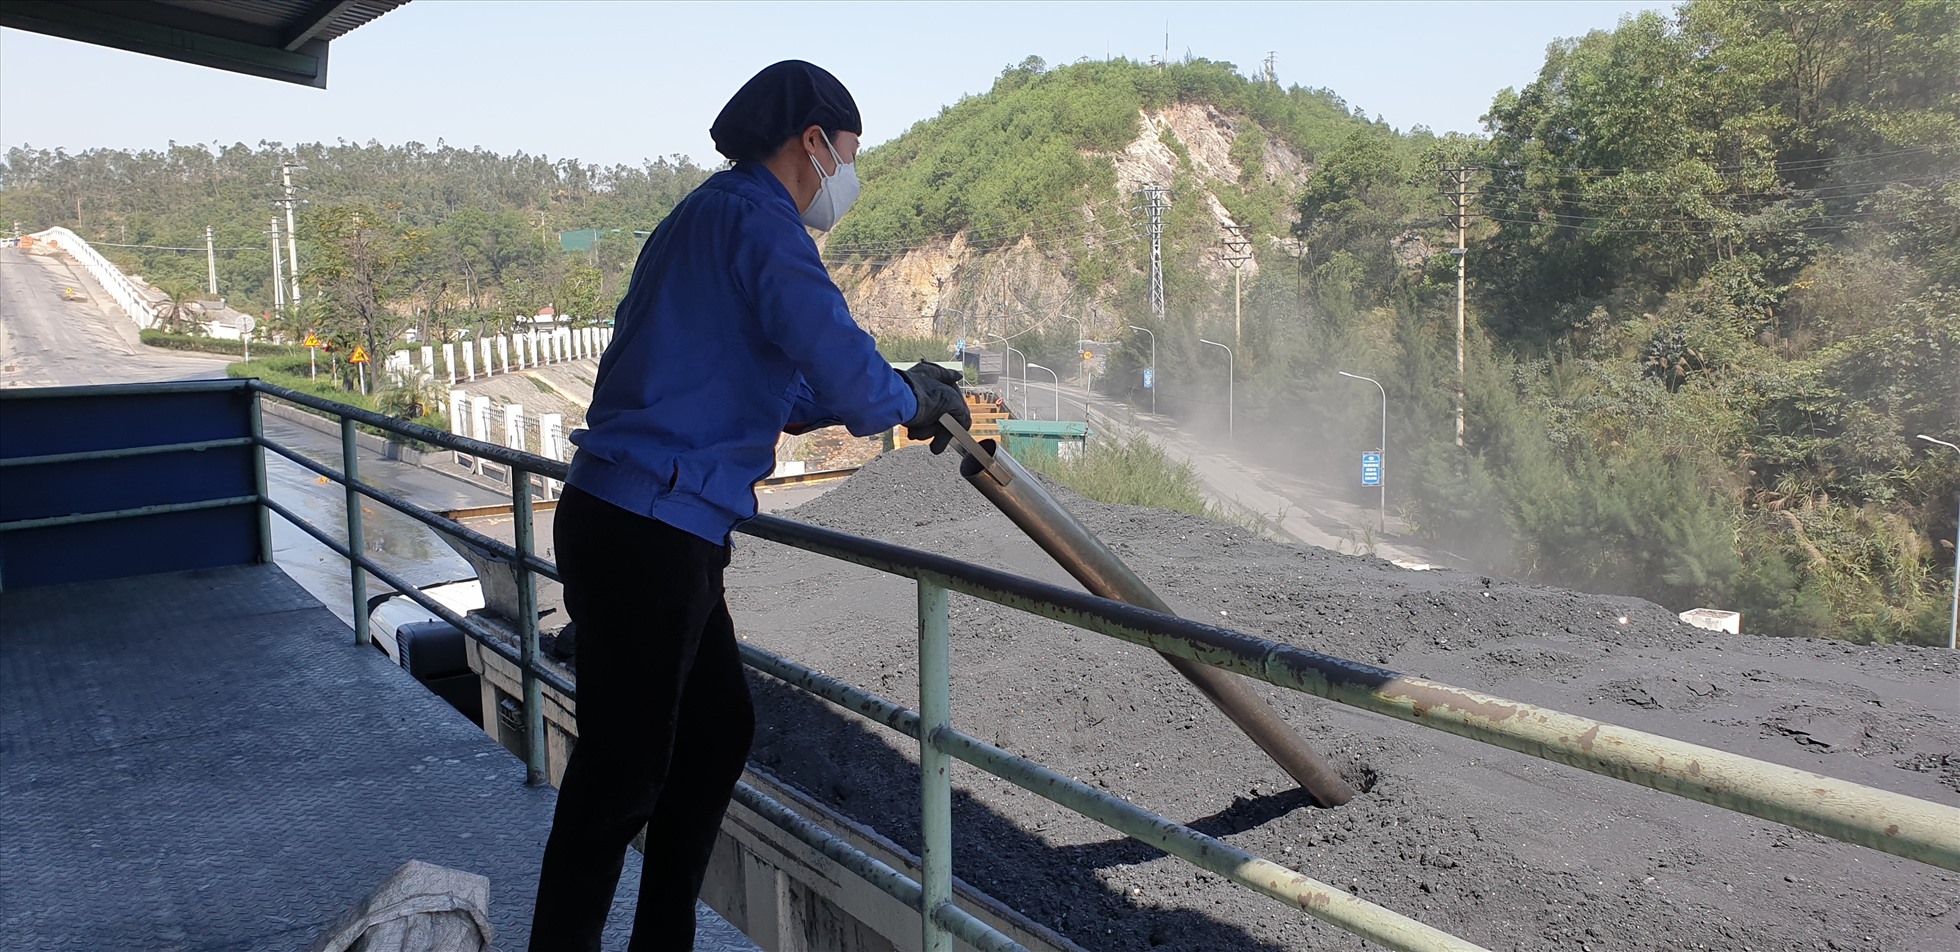 Lấy mẫu than trước khi đưa ra sà lan tại Cảng làng Khánh của Công ty tuyển than Hòn Gai. Ảnh: Nguyễn Hùng